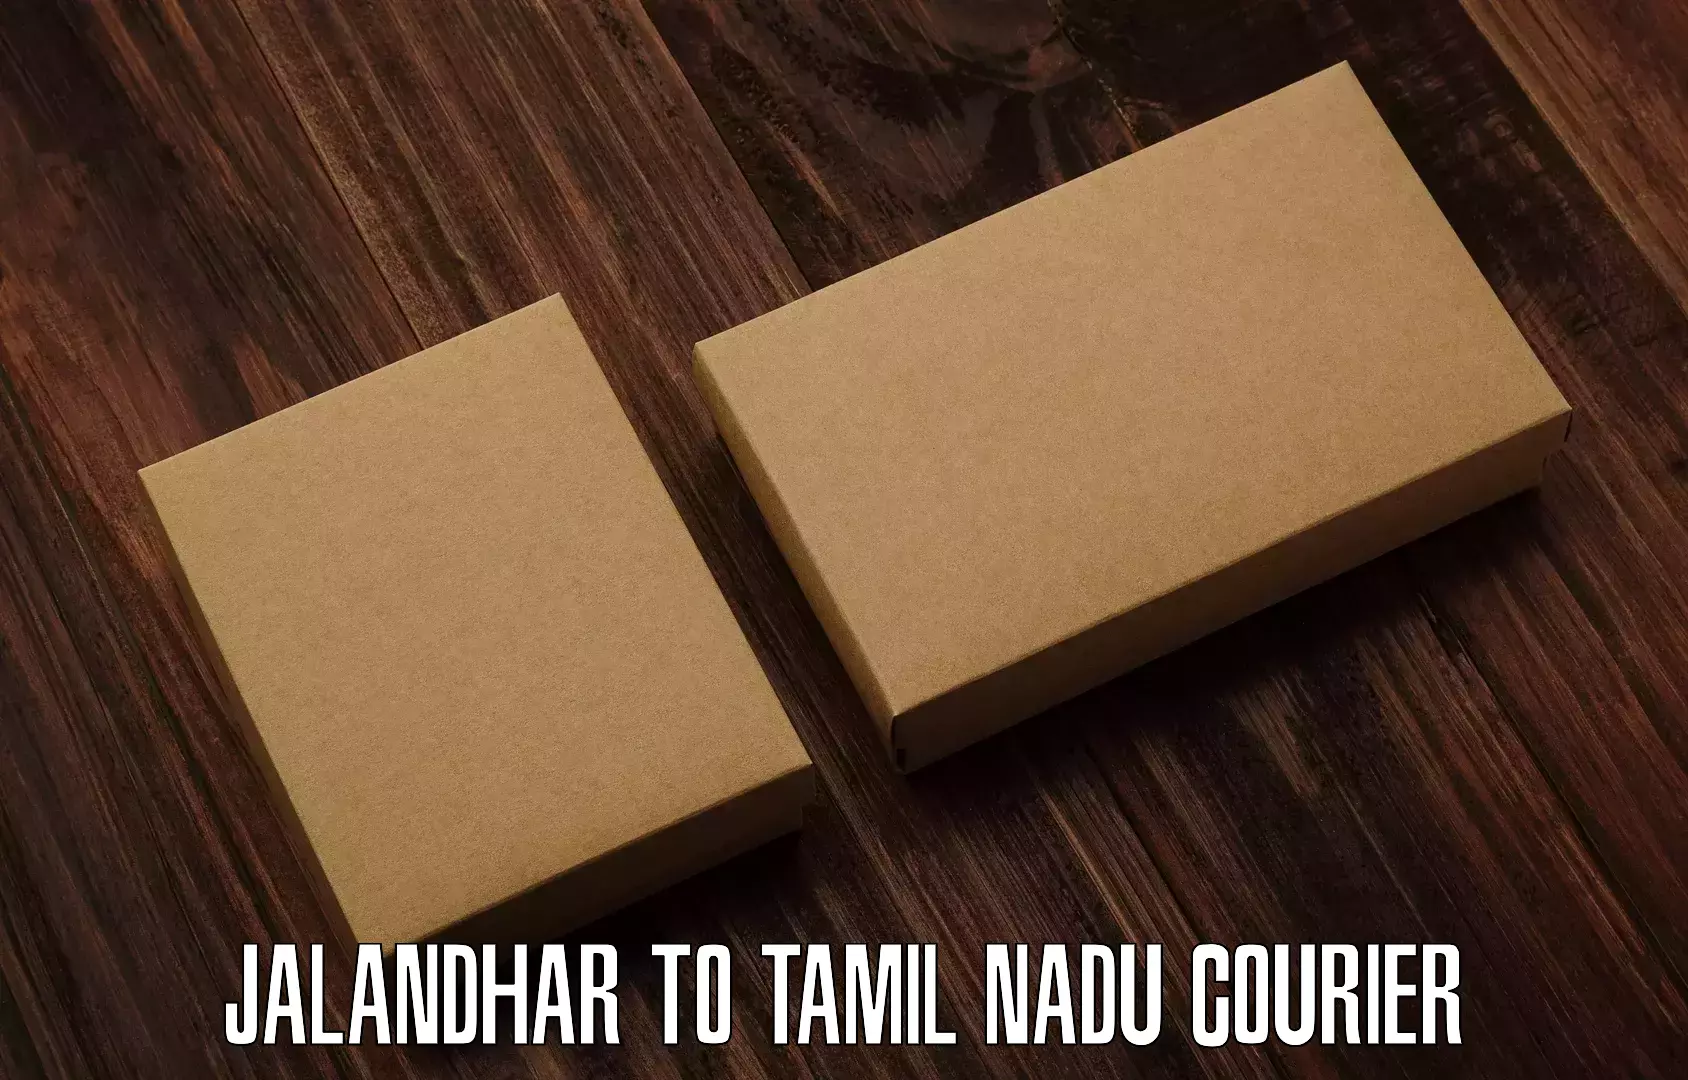 International courier networks Jalandhar to Tamil Nadu